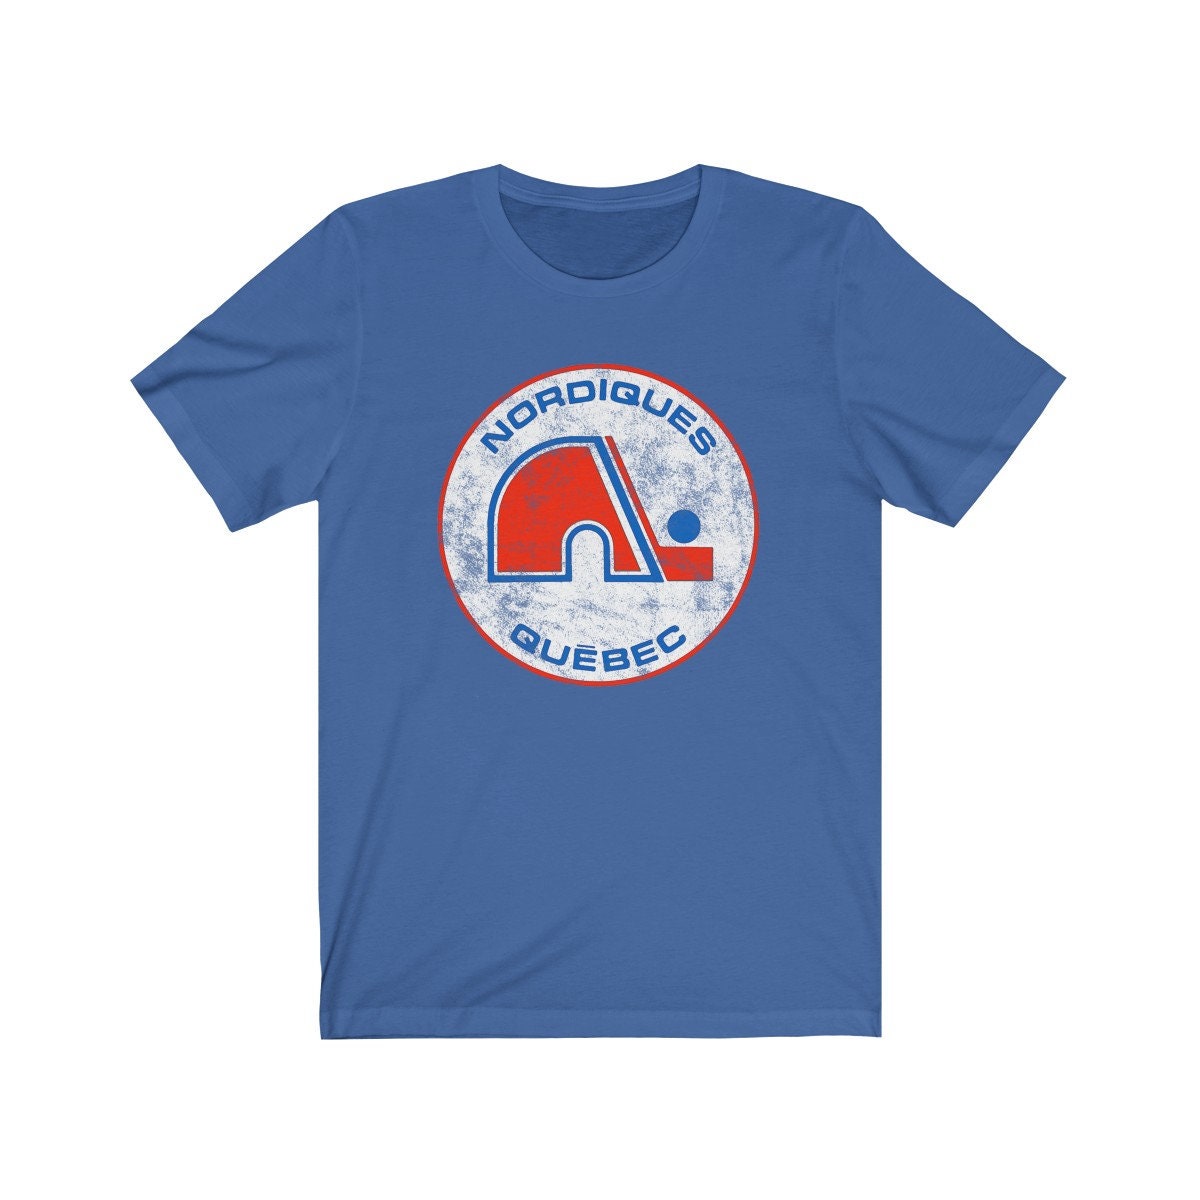 Aliexpress Vintage Quebec Hockey - Retro Nordiques T-Shirt Summer Clothes Vintage T Shirt Vintage Clothes